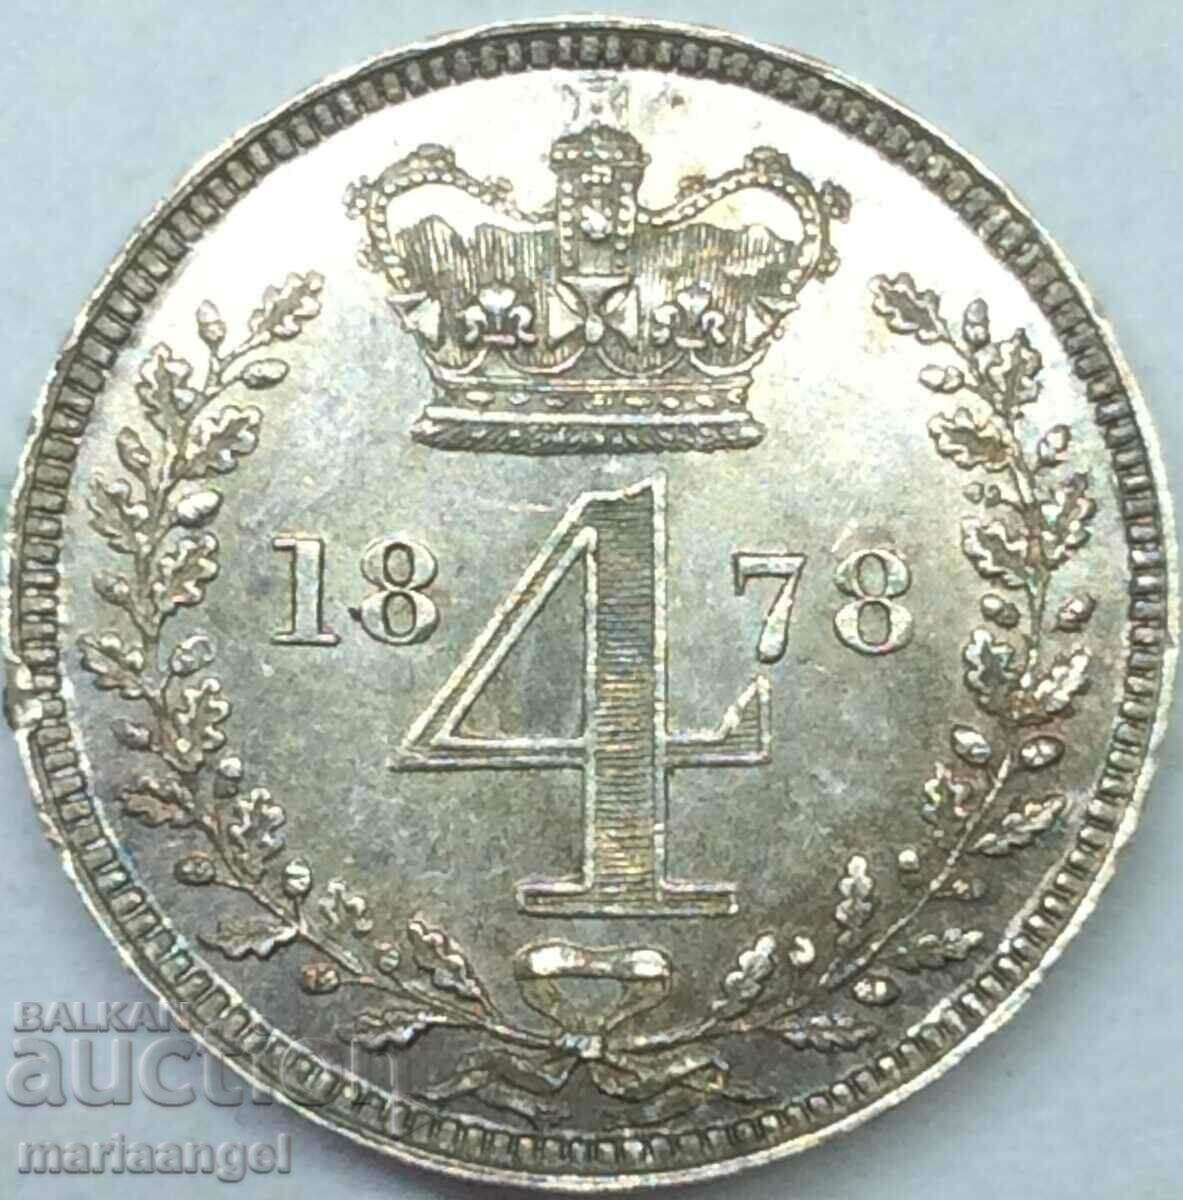 Marea Britanie 4 Pence 1878 Maundy Victoria Silver - RR